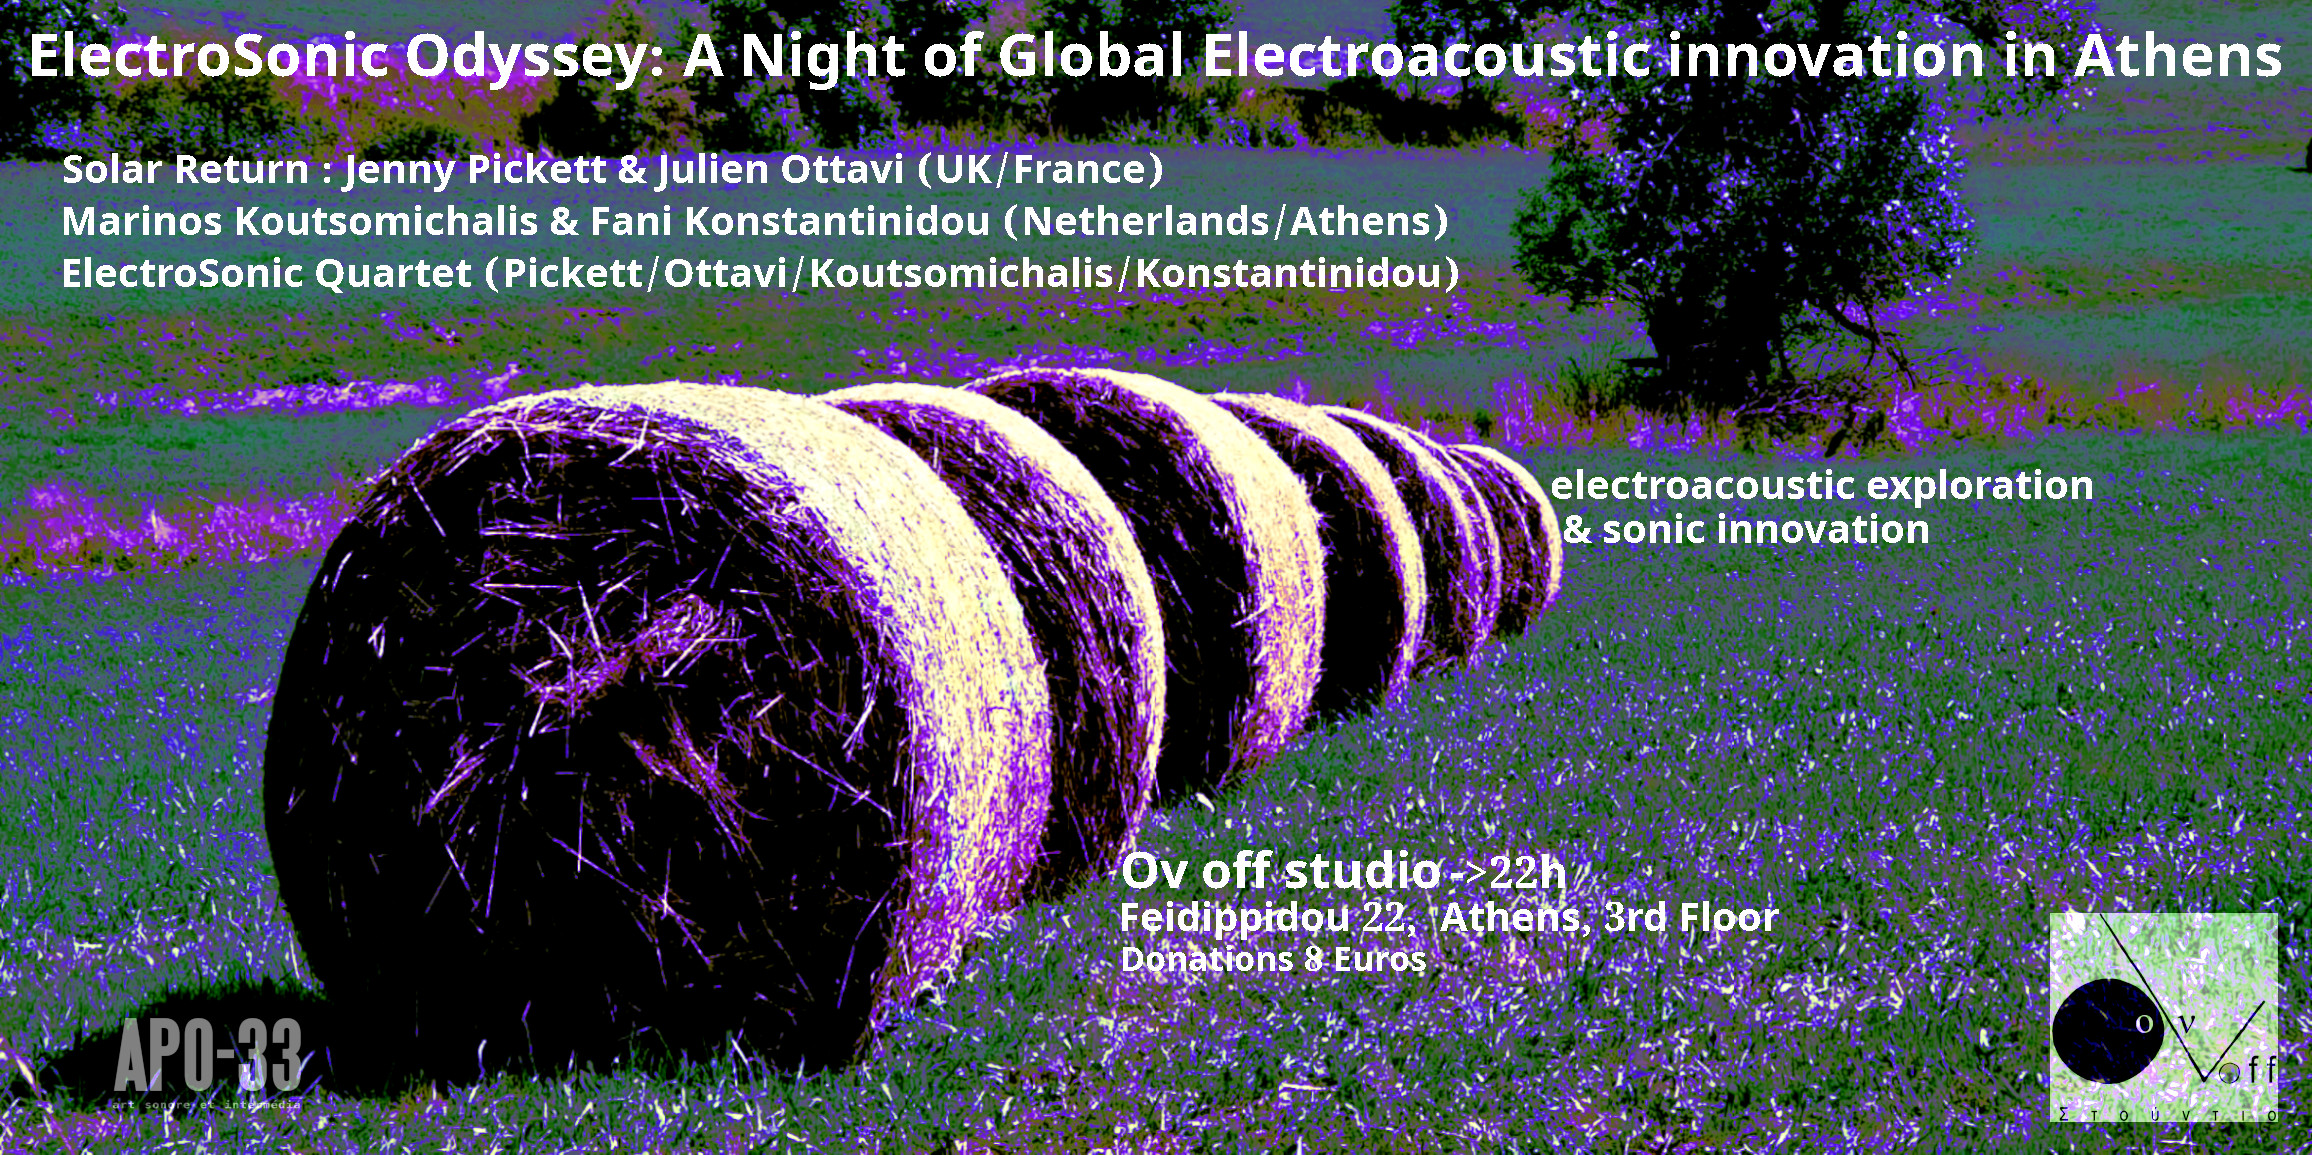 Odyssée ElectroSonic : Une Nuit d’Innovation électroacoustique internationale à Athènes